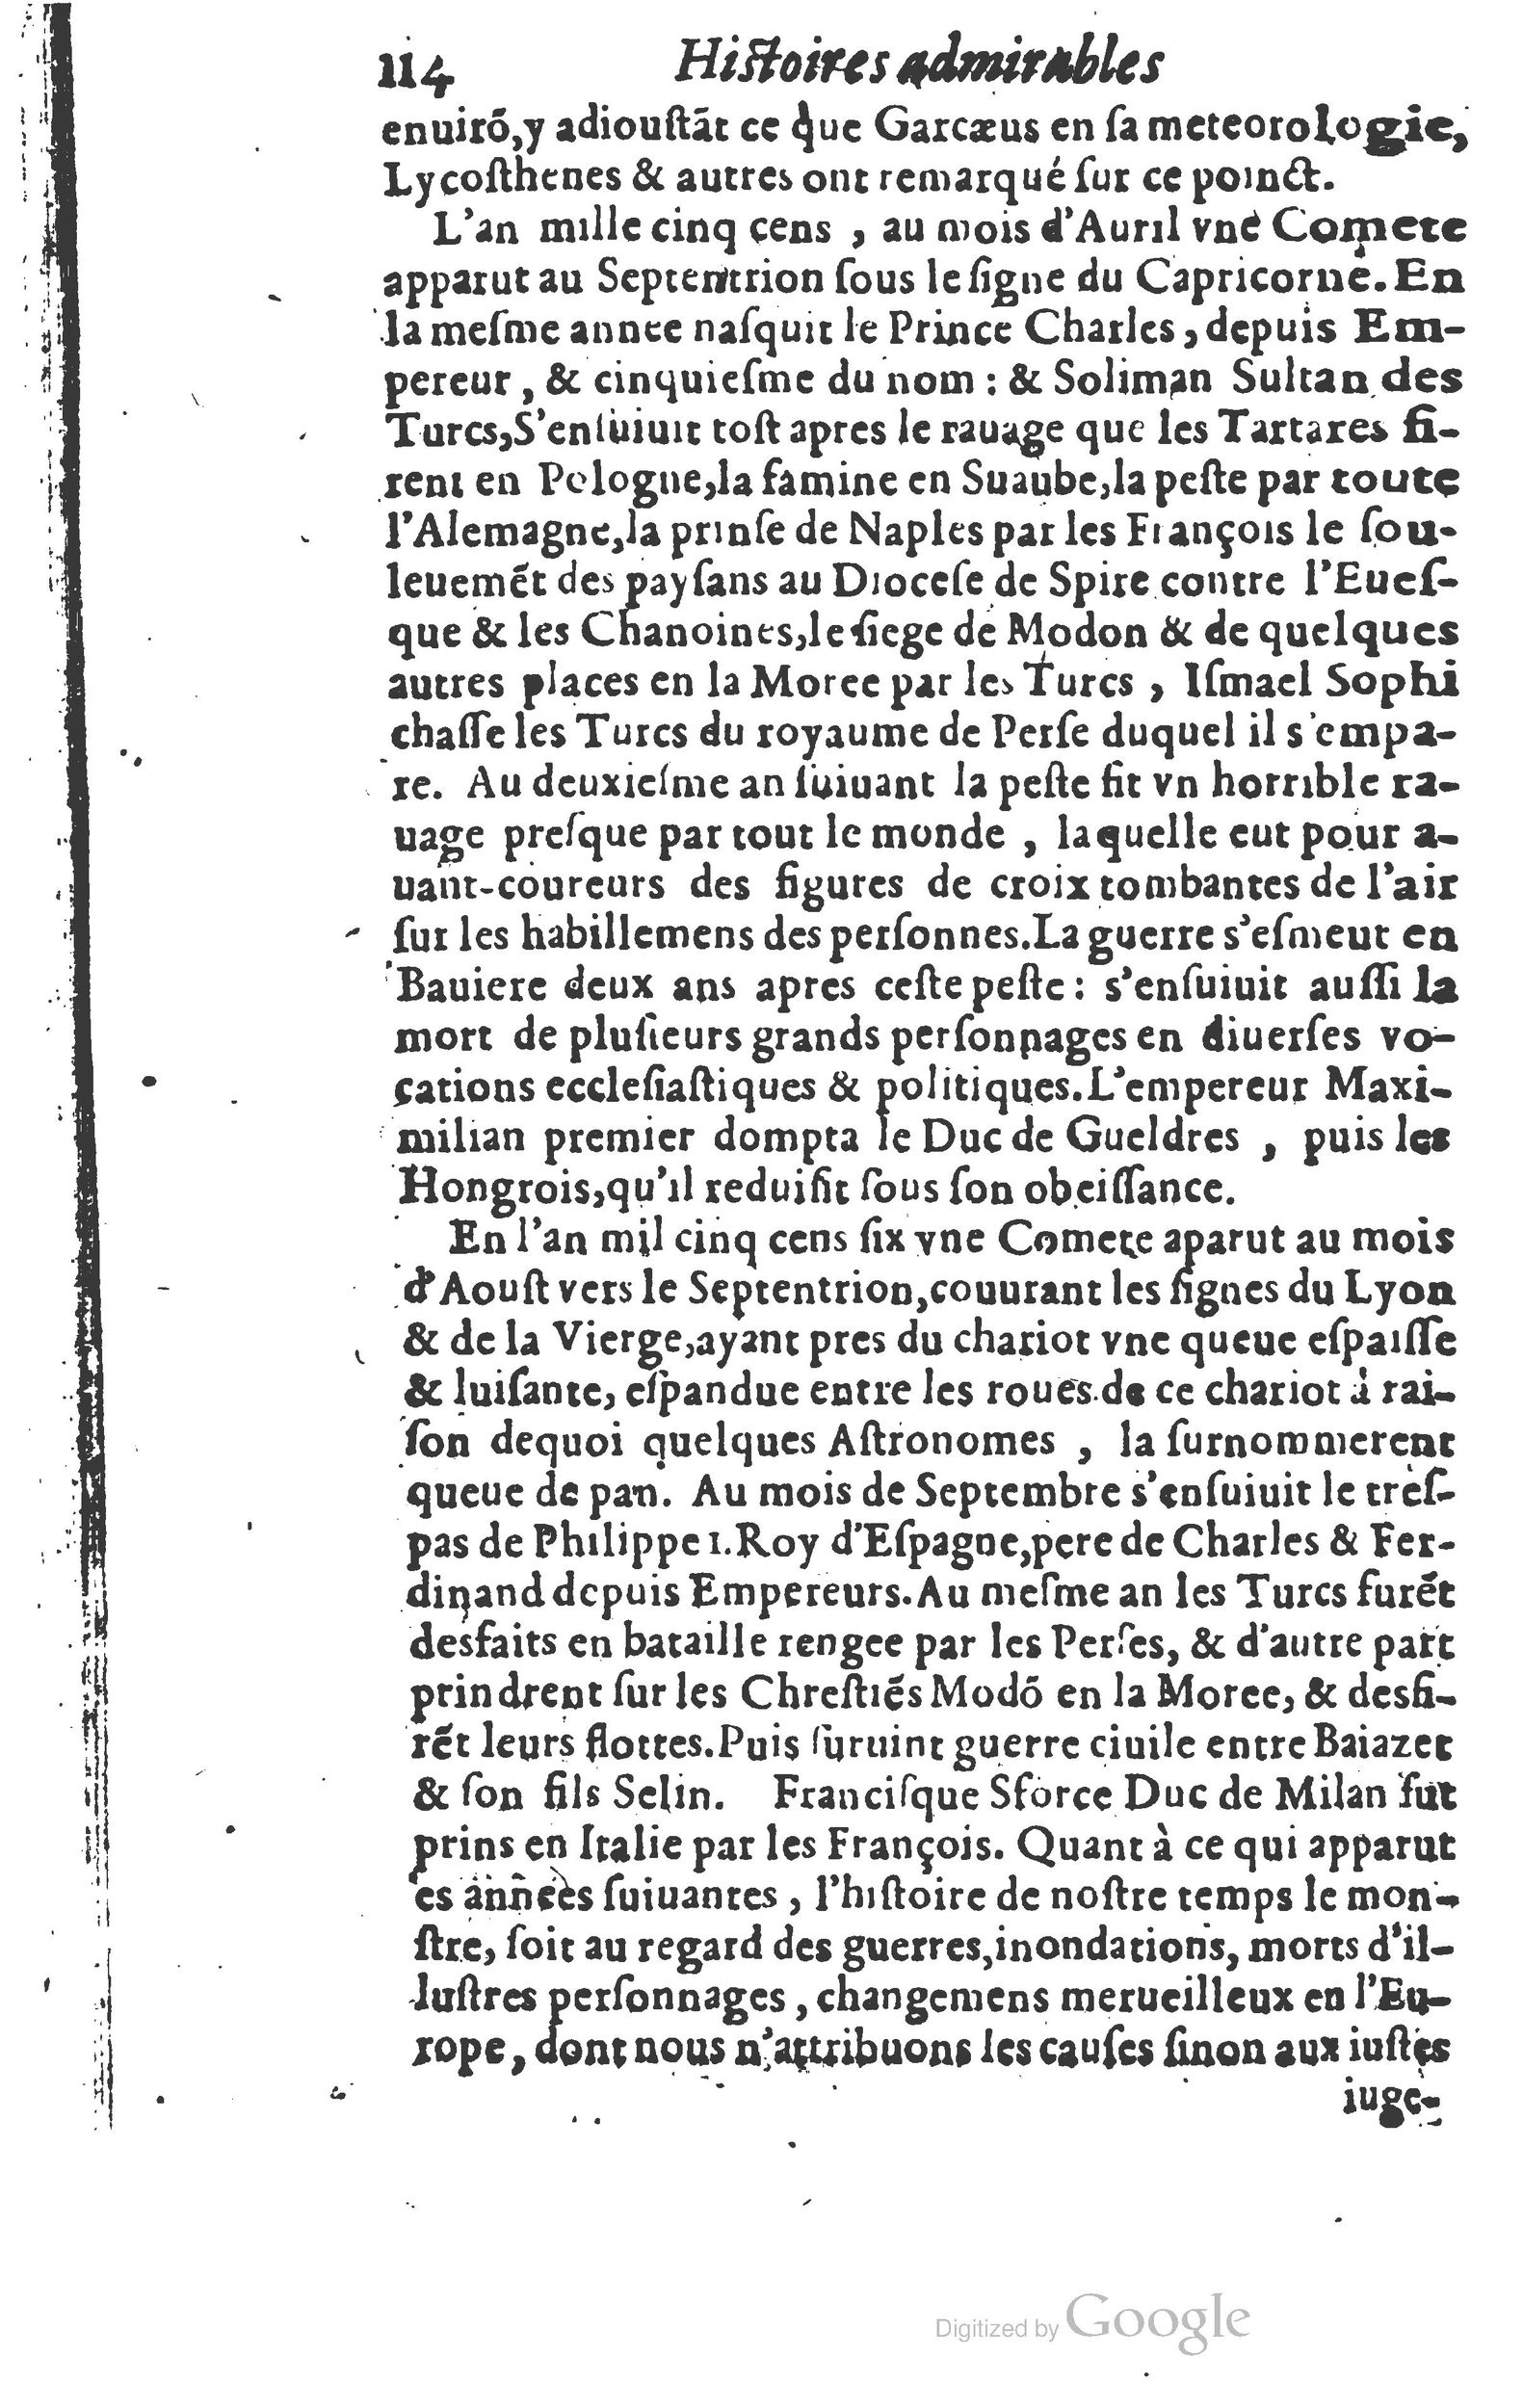 1610 Trésor d’histoires admirables et mémorables de nostre temps Marceau Princeton_Page_0135.jpg